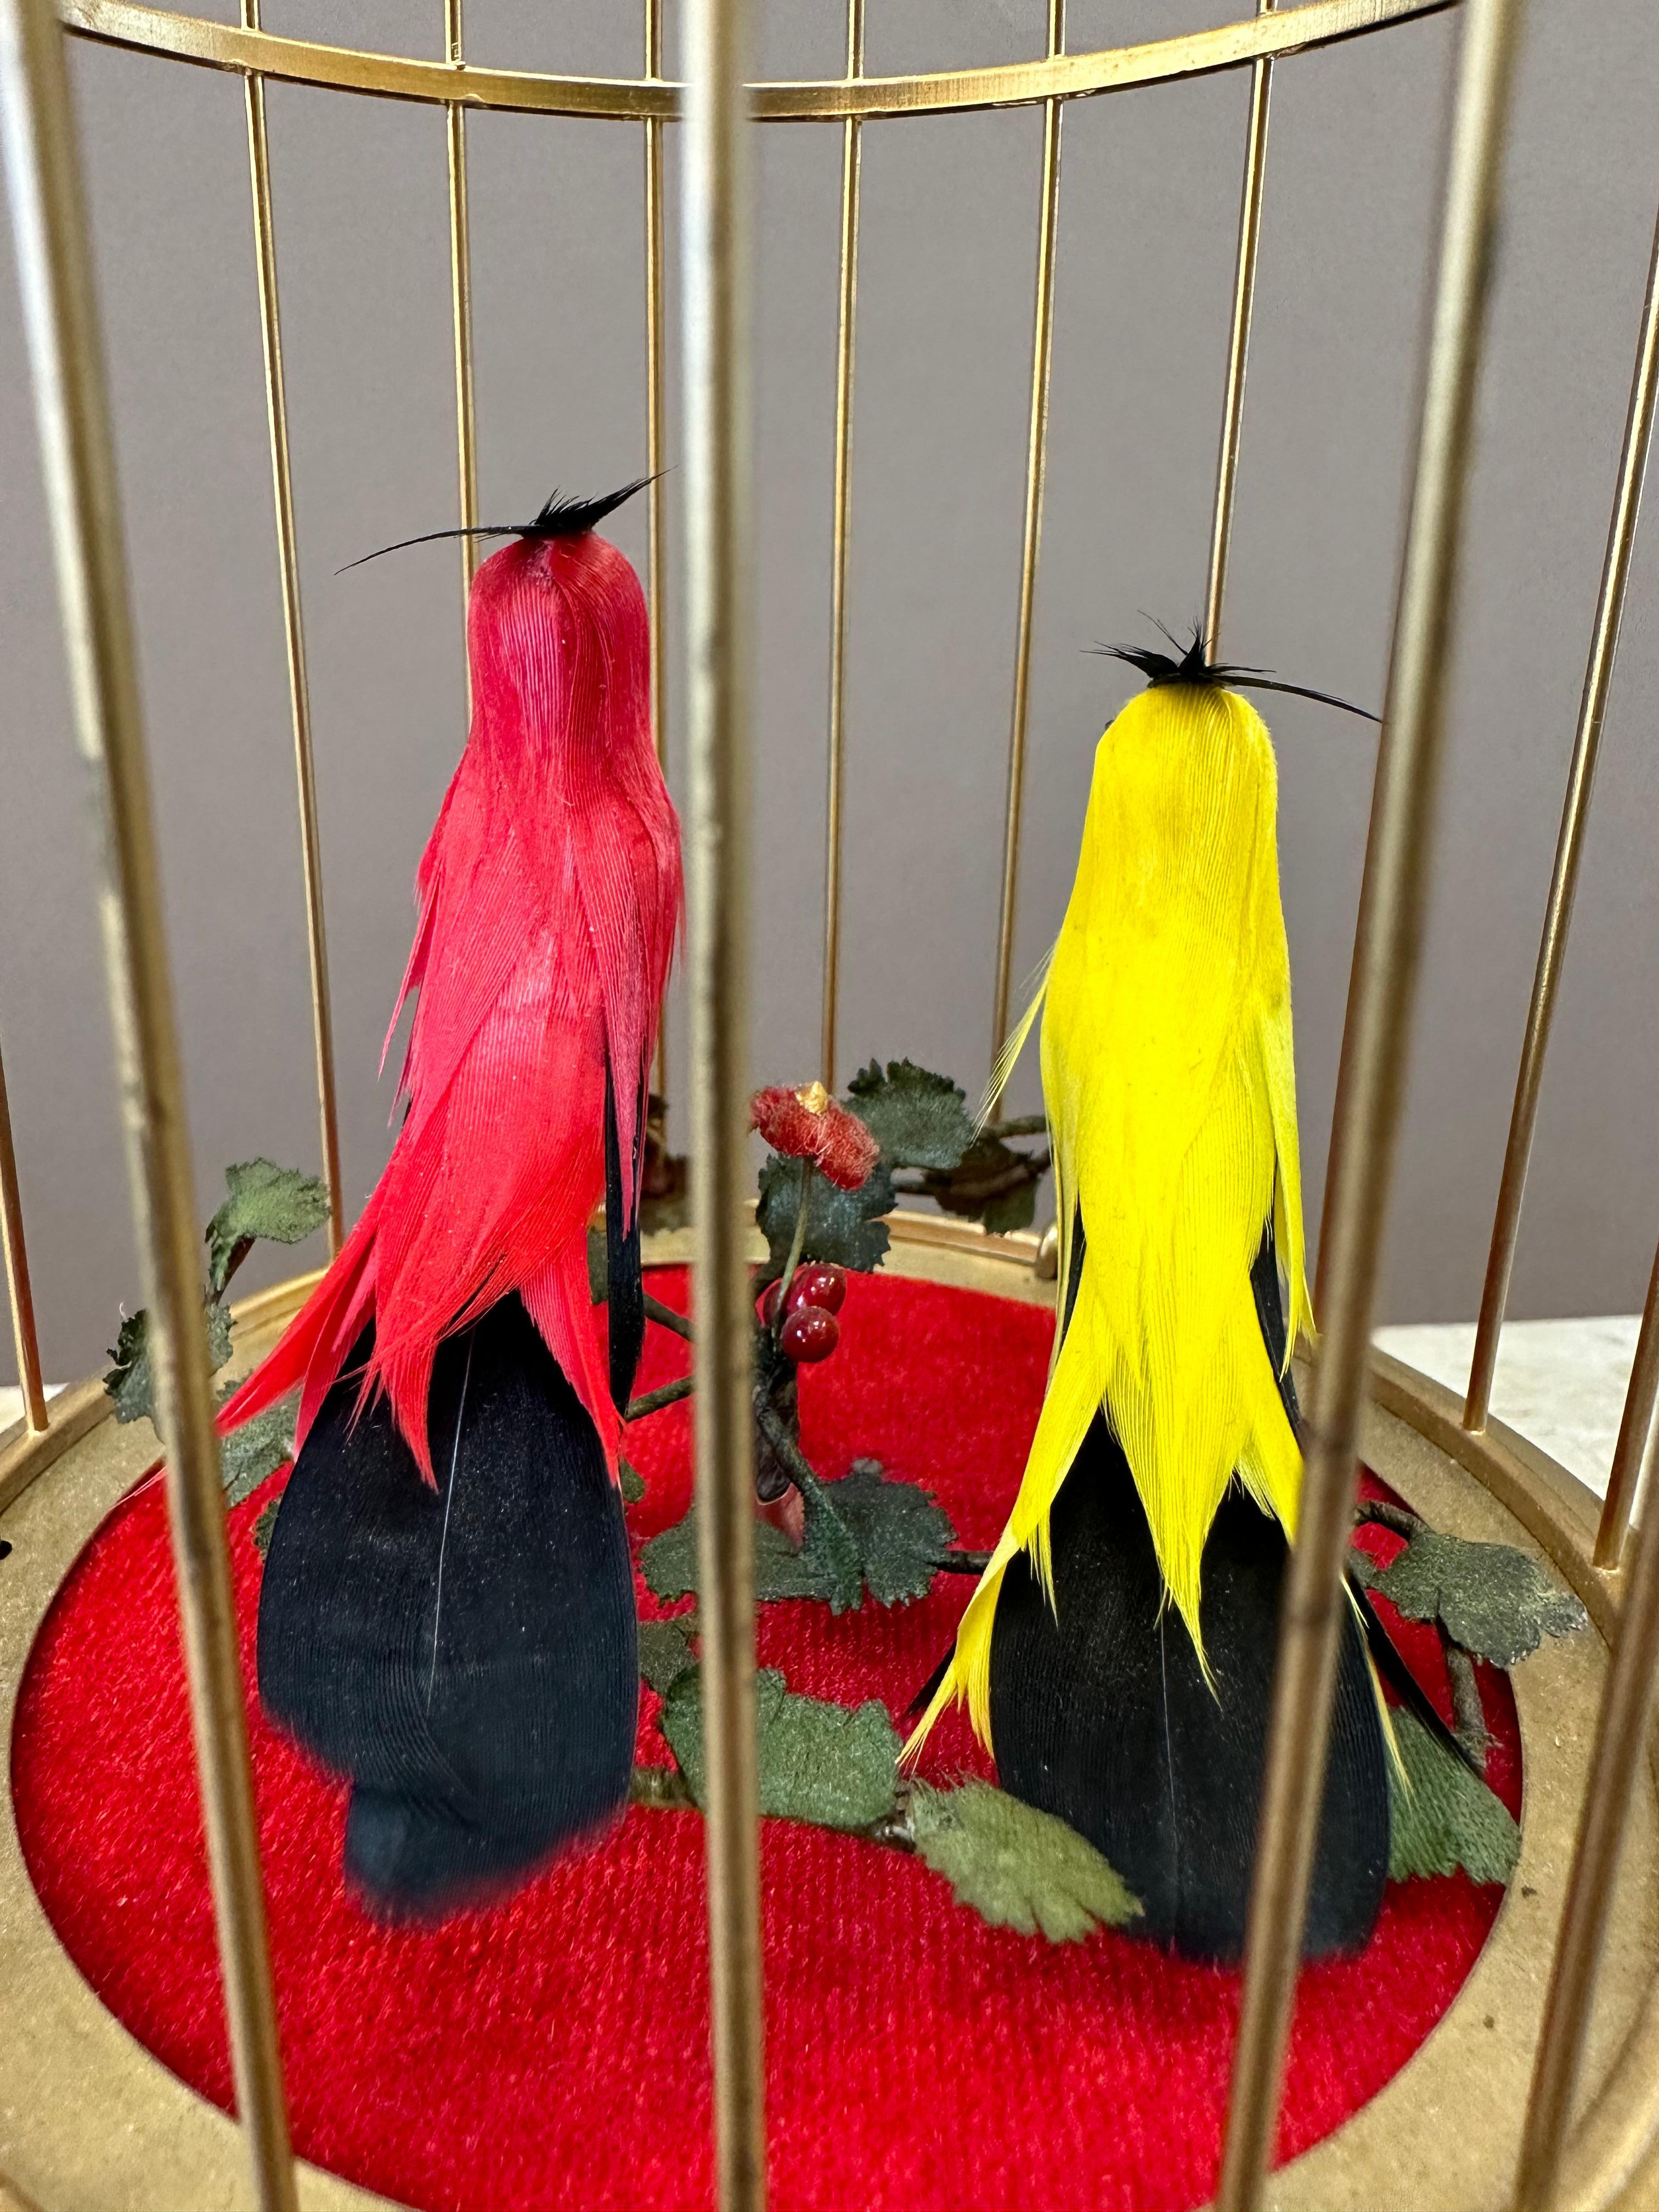 Automate à oiseaux musicaux du début du 20e siècle. Deux oiseaux chanteurs automatisés aux voix fortes et au plumage flamboyant au milieu de feuillages dans une cage en laiton doré. Les oiseaux chantent à tour de rôle. Suisse, vers 1920.    